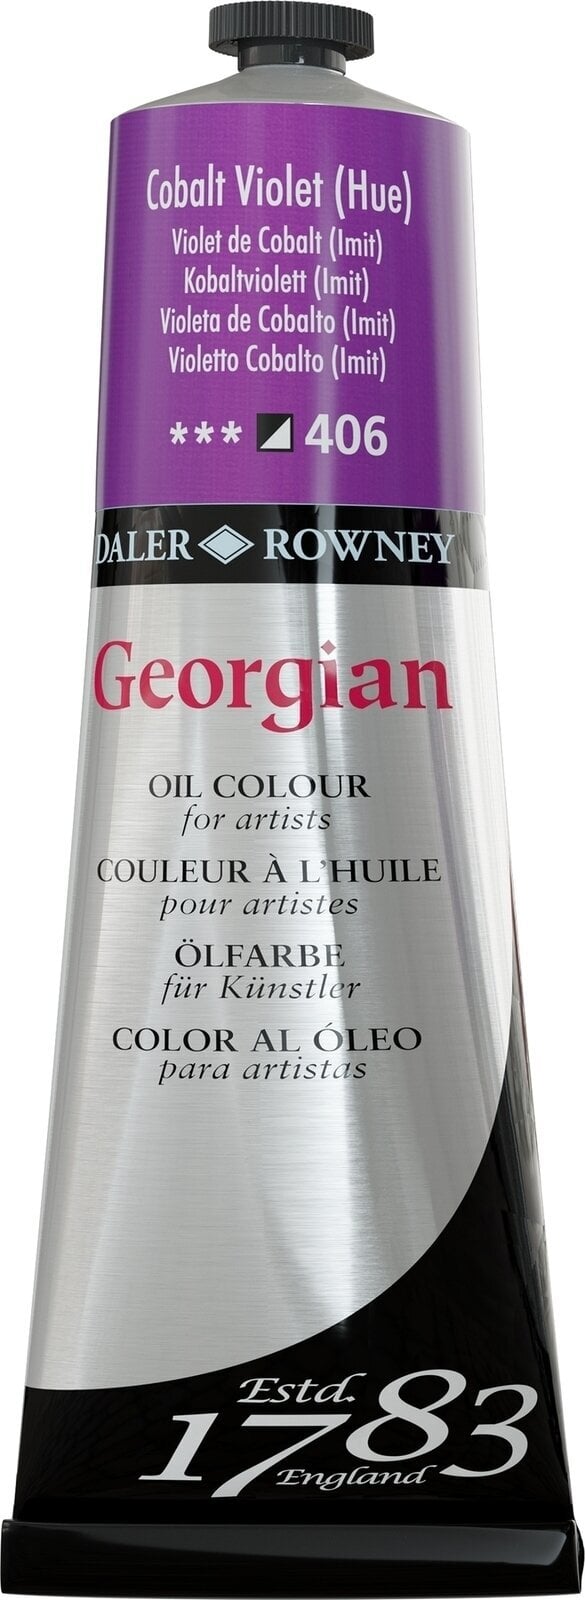 Oil colour Daler Rowney Georgian Oil Paint Cobalt Violet Hue 225 ml 1 pc